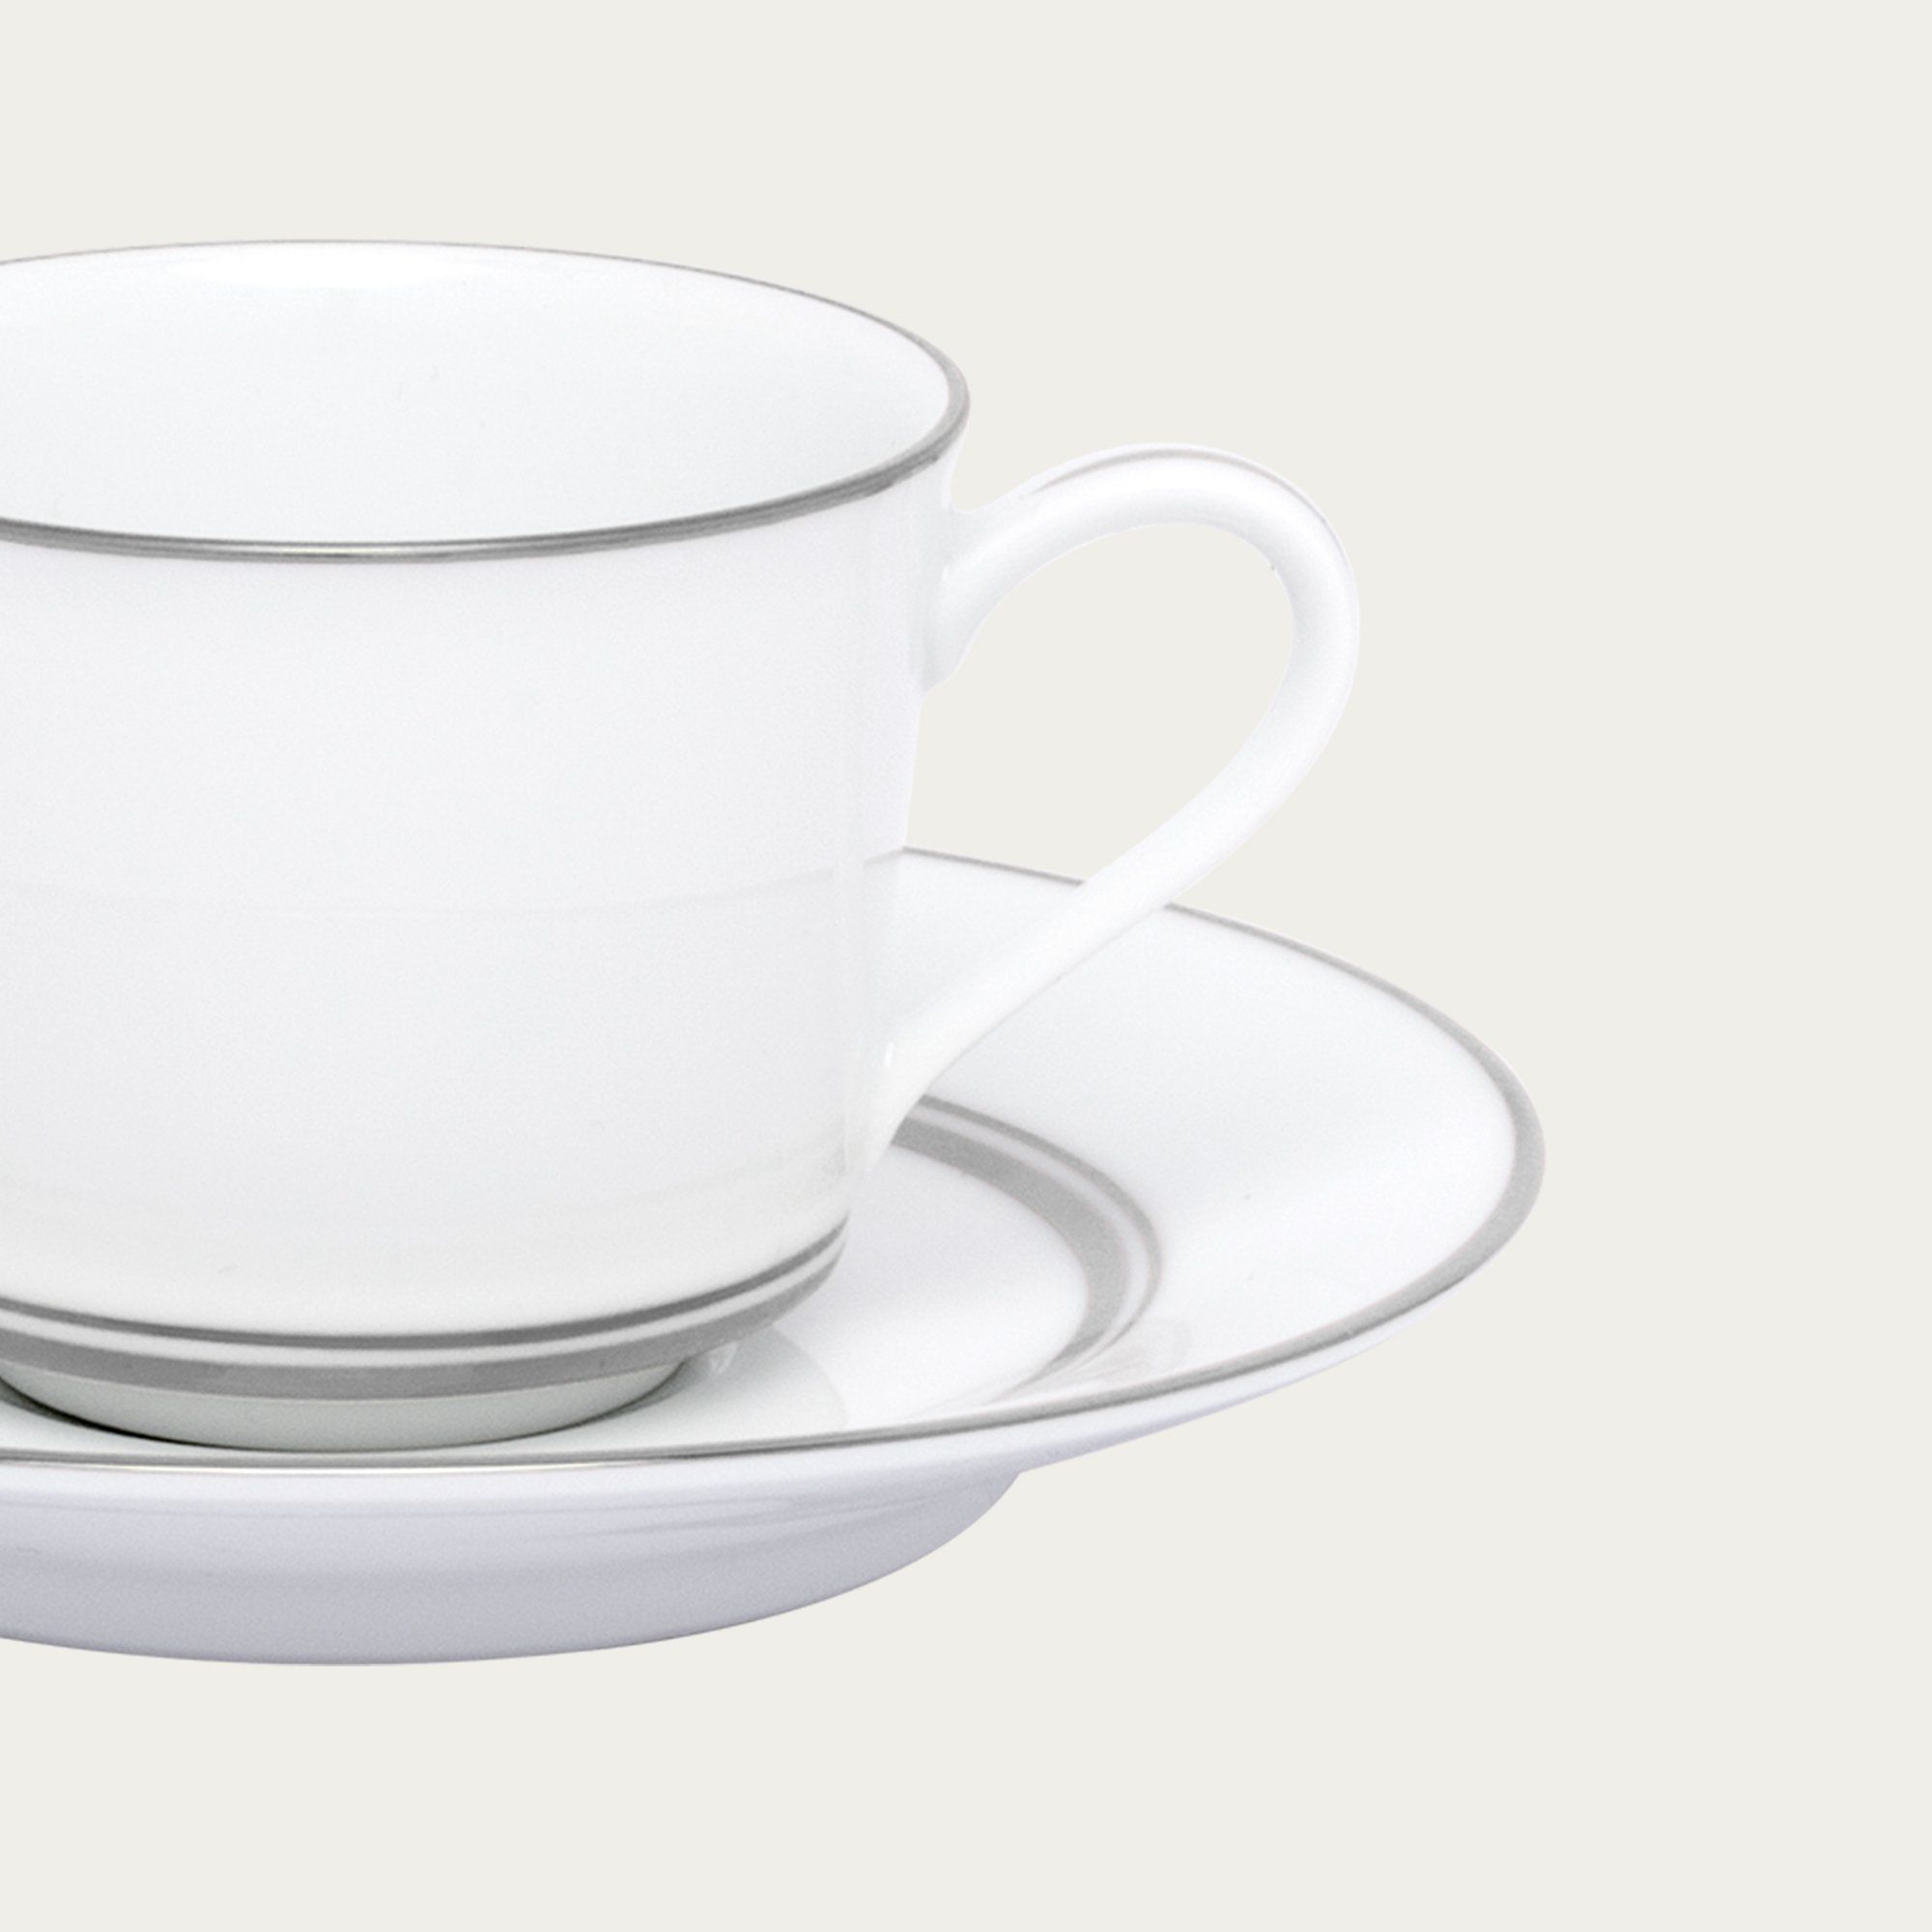  Chén trà (tách trà) nhỏ 100ml kèm đĩa lót | Galaxy L554L-T91992 